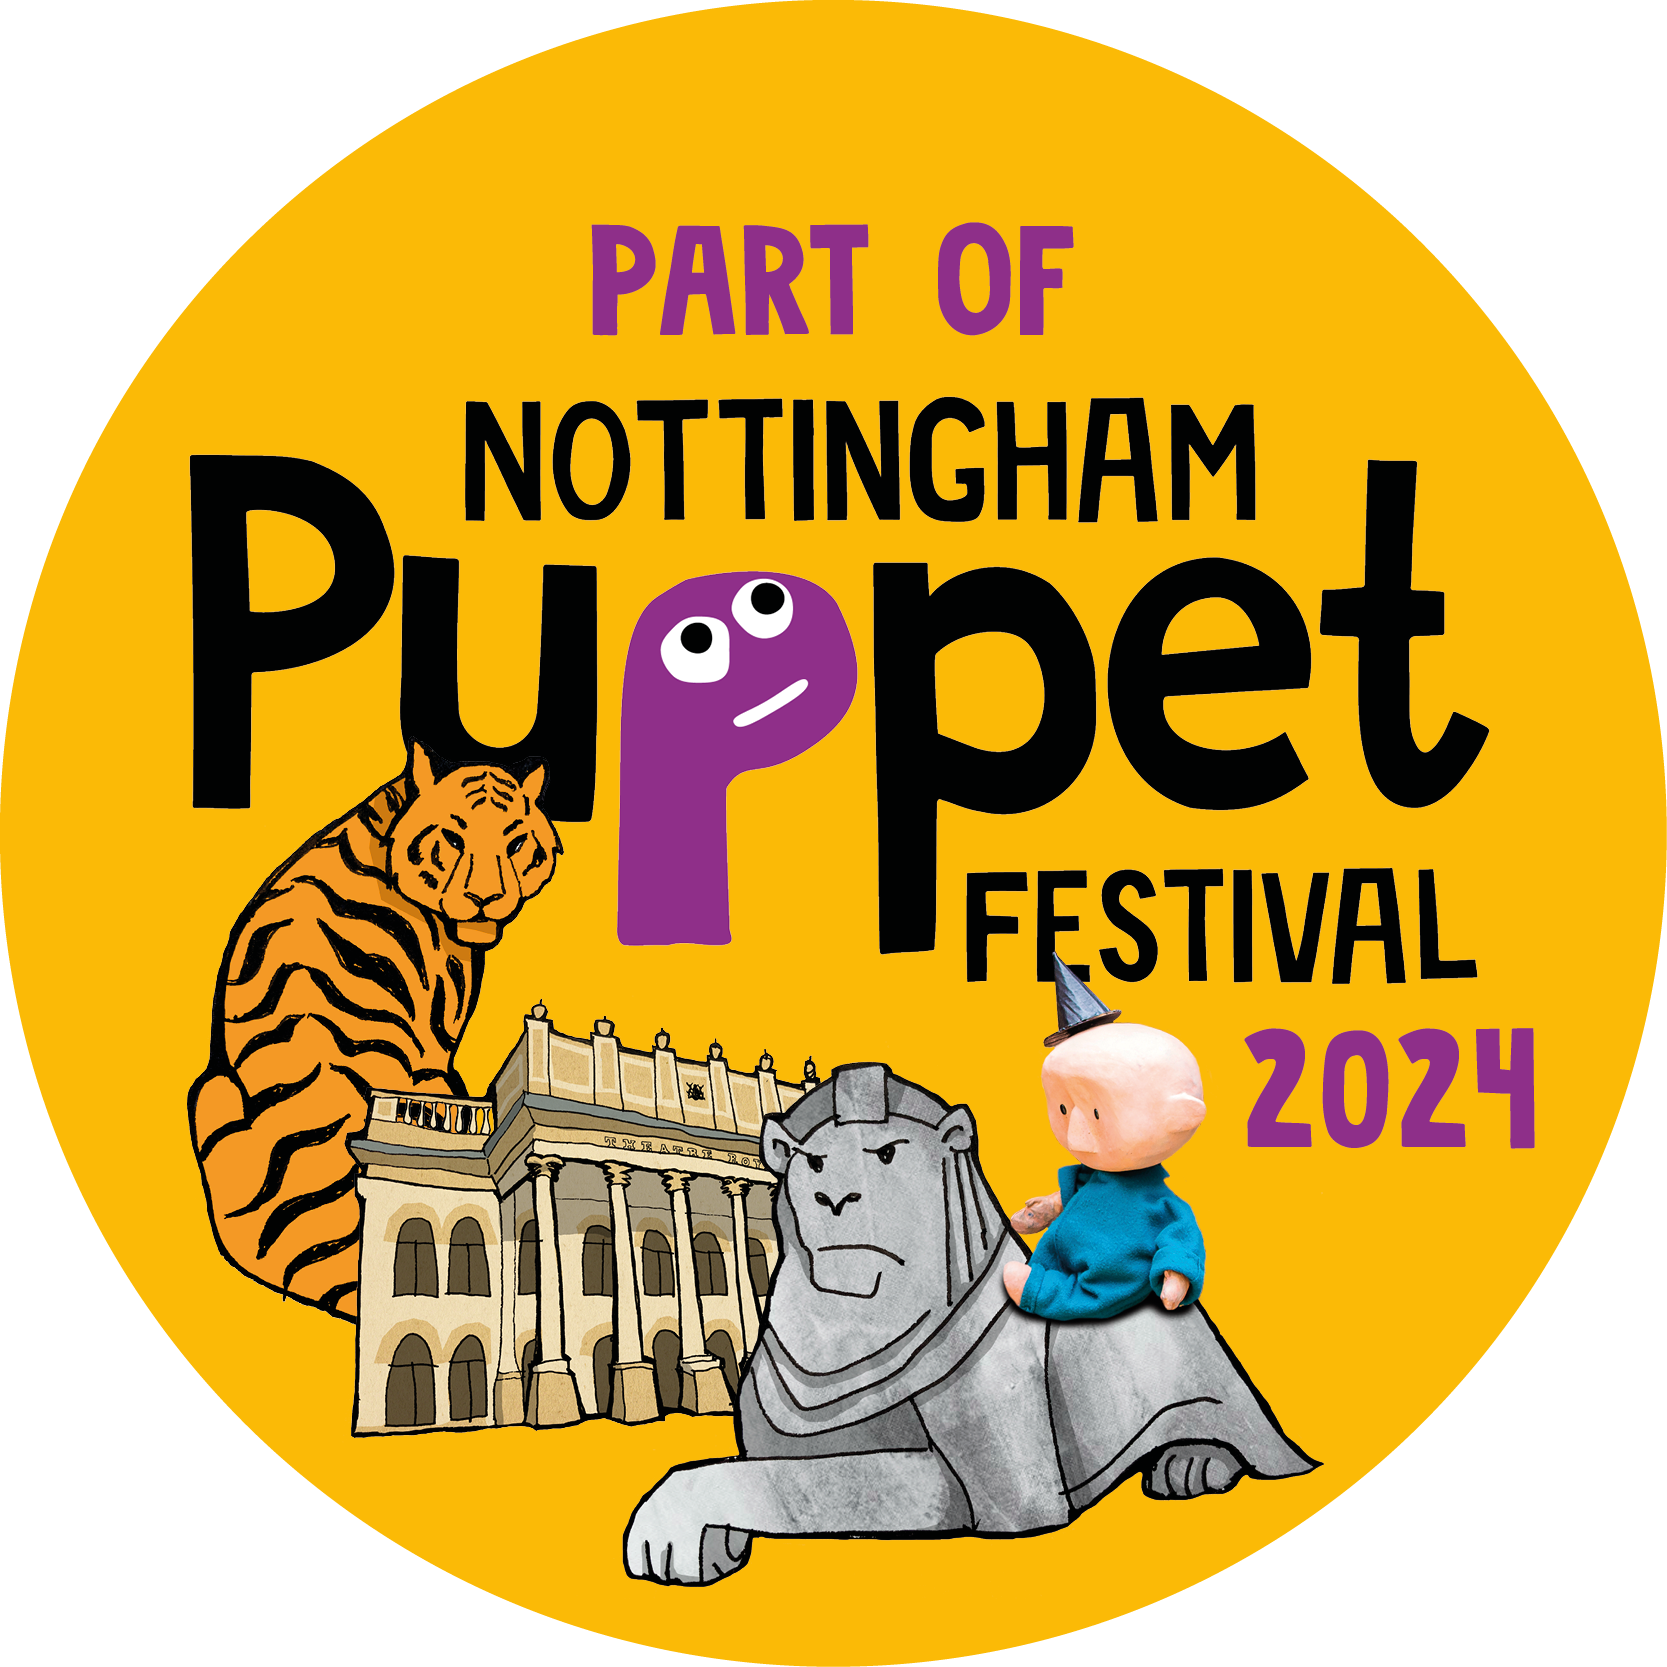 Part of Nottingham Puppet Festival 